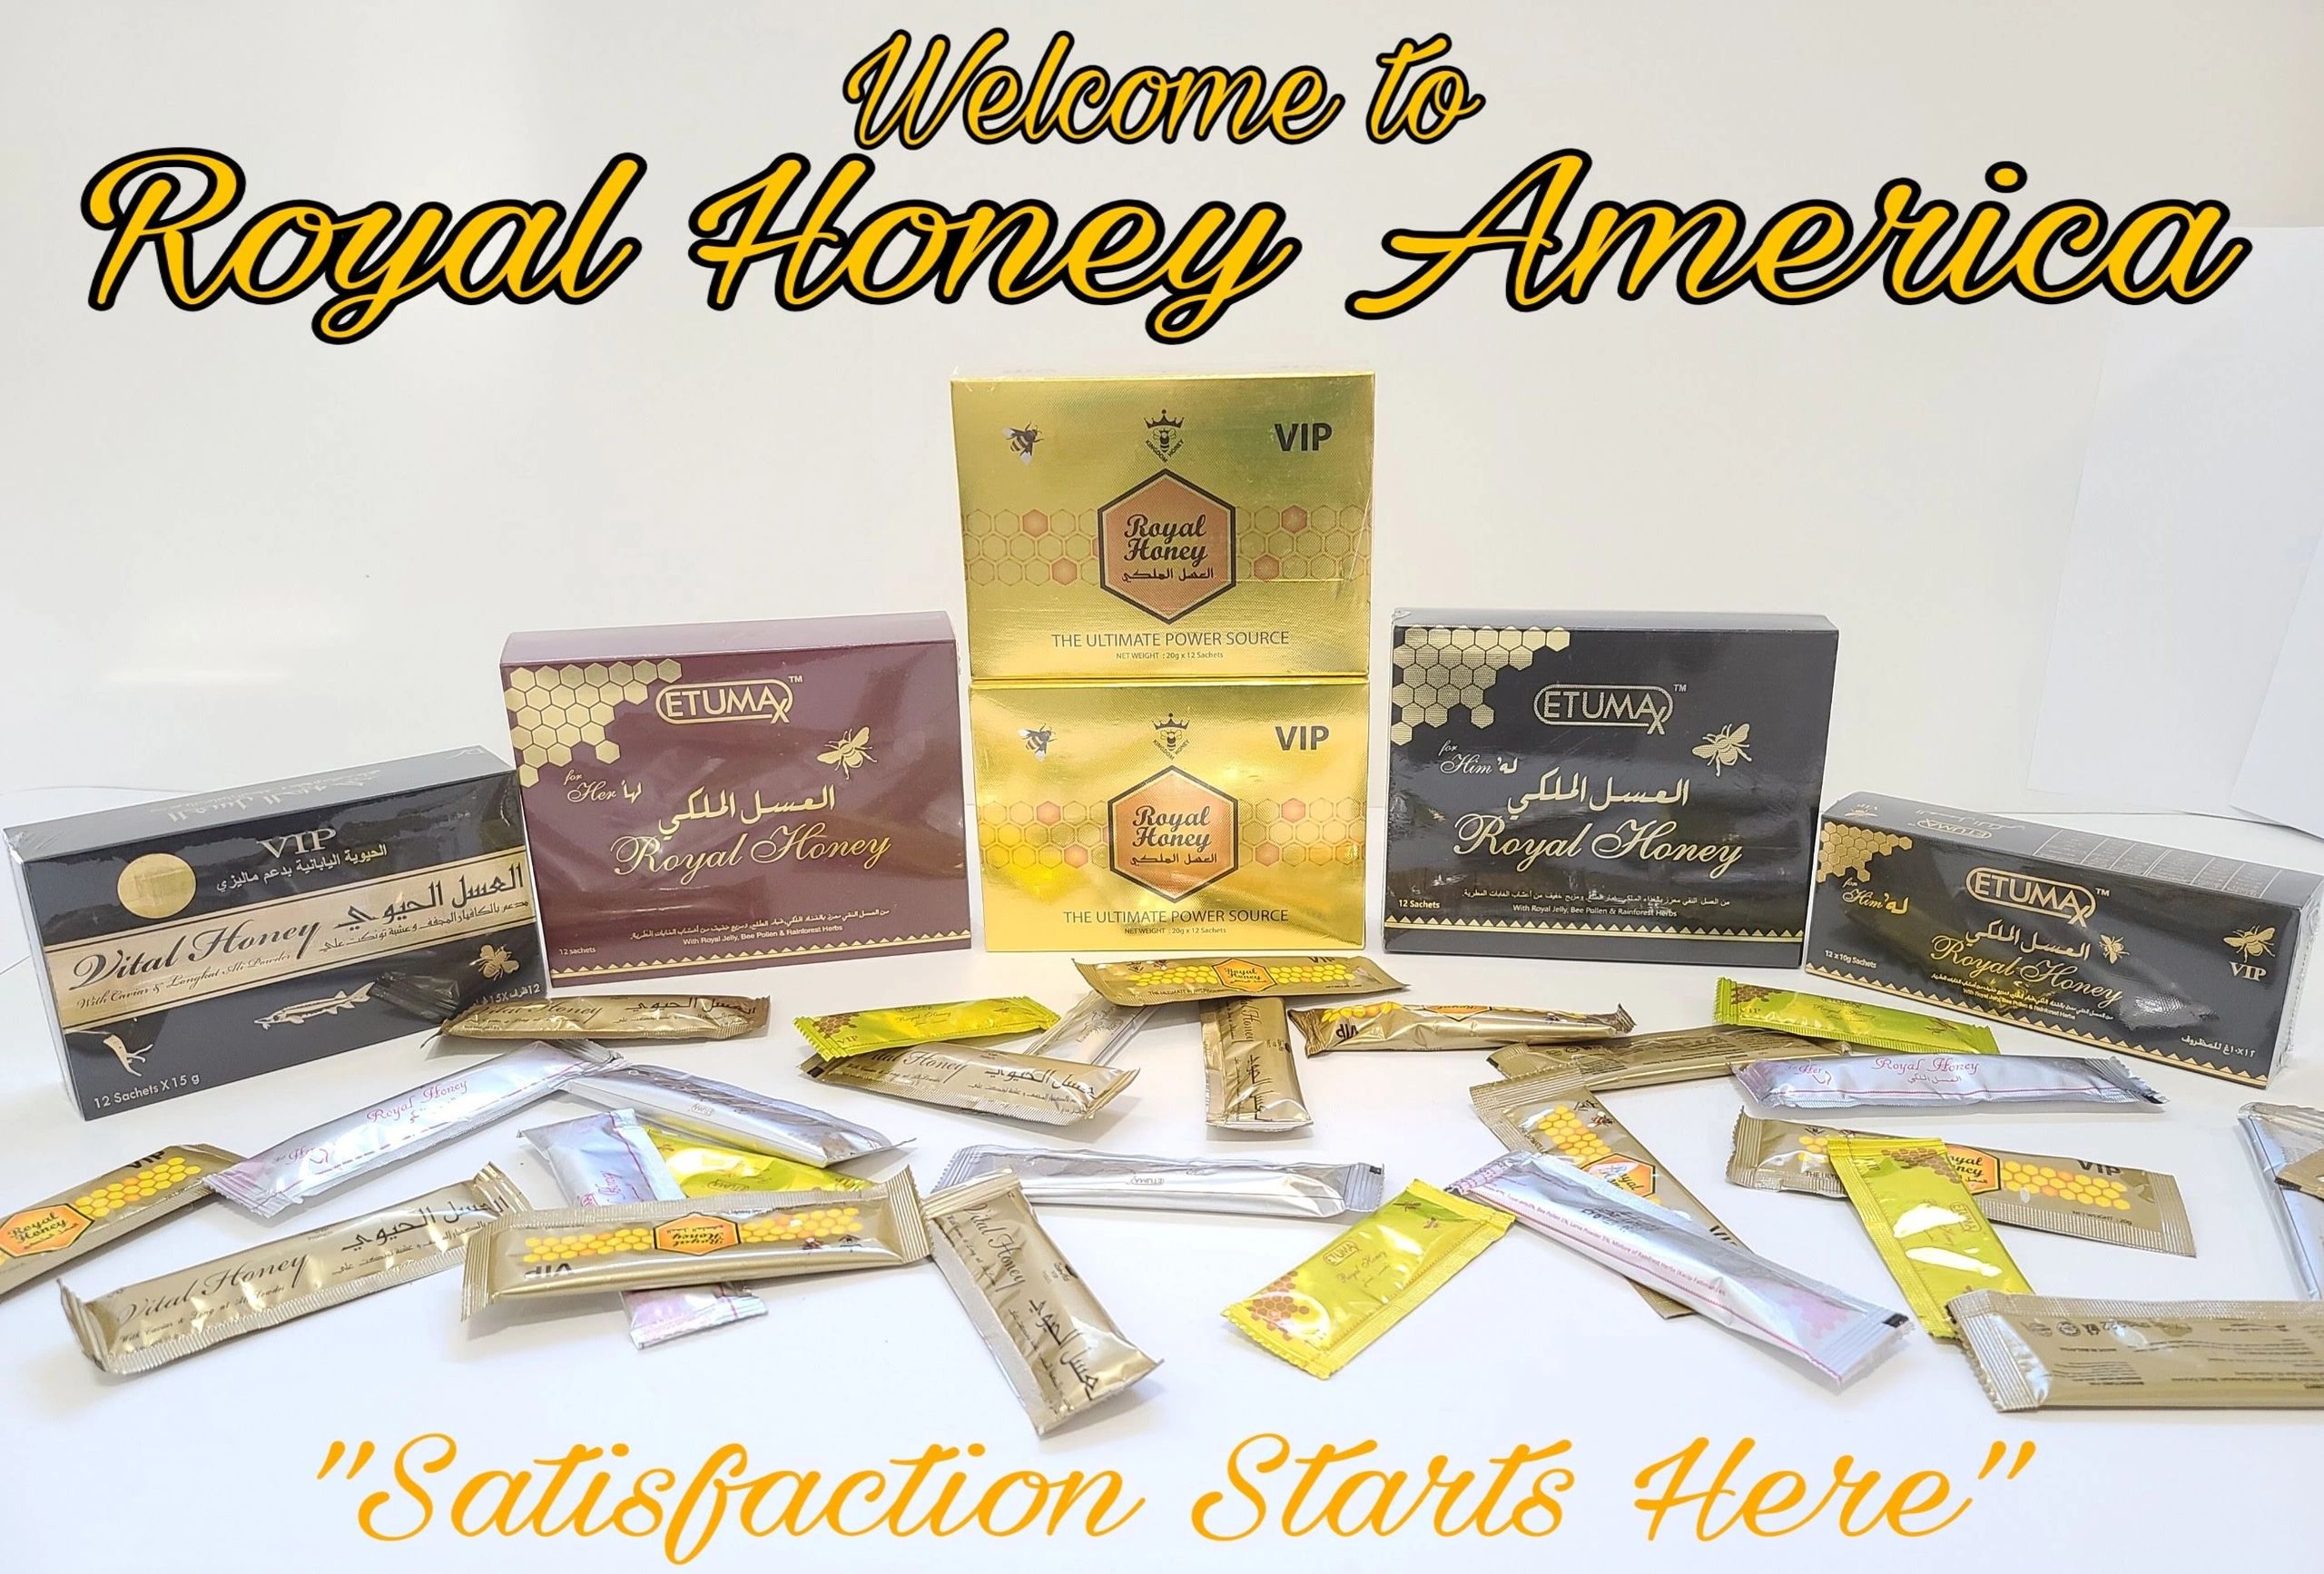 Royal Honey America - Royal Honey VIP
Etumax Dose Vital Royal Honey